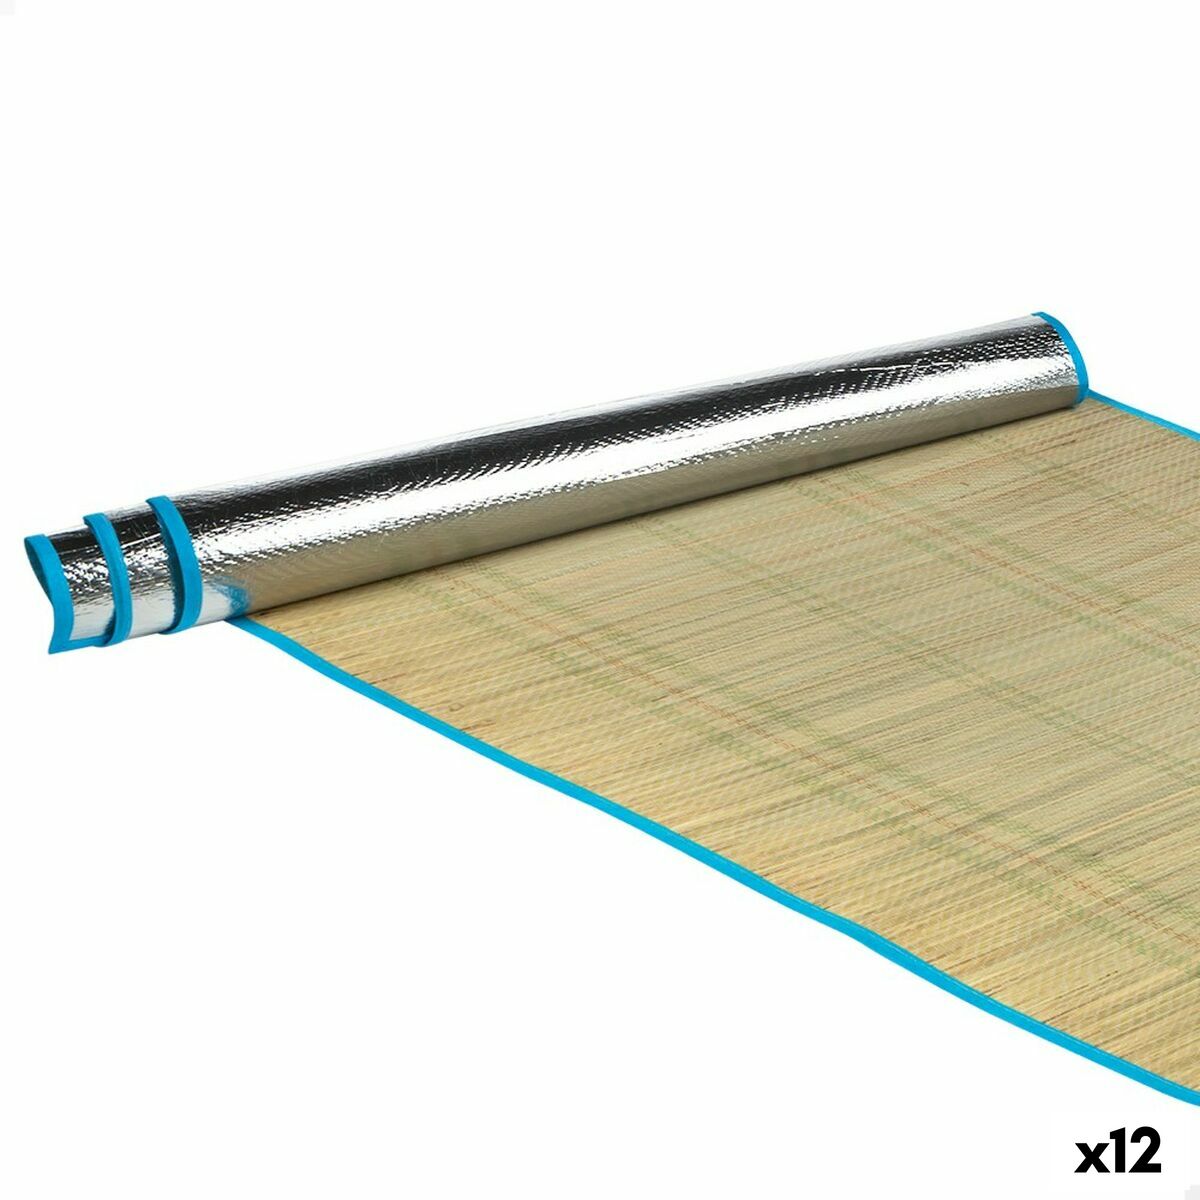 Παραλλαγή Aktive PVC 180 x 0,5 x 75 cm (12 Μονάδες)